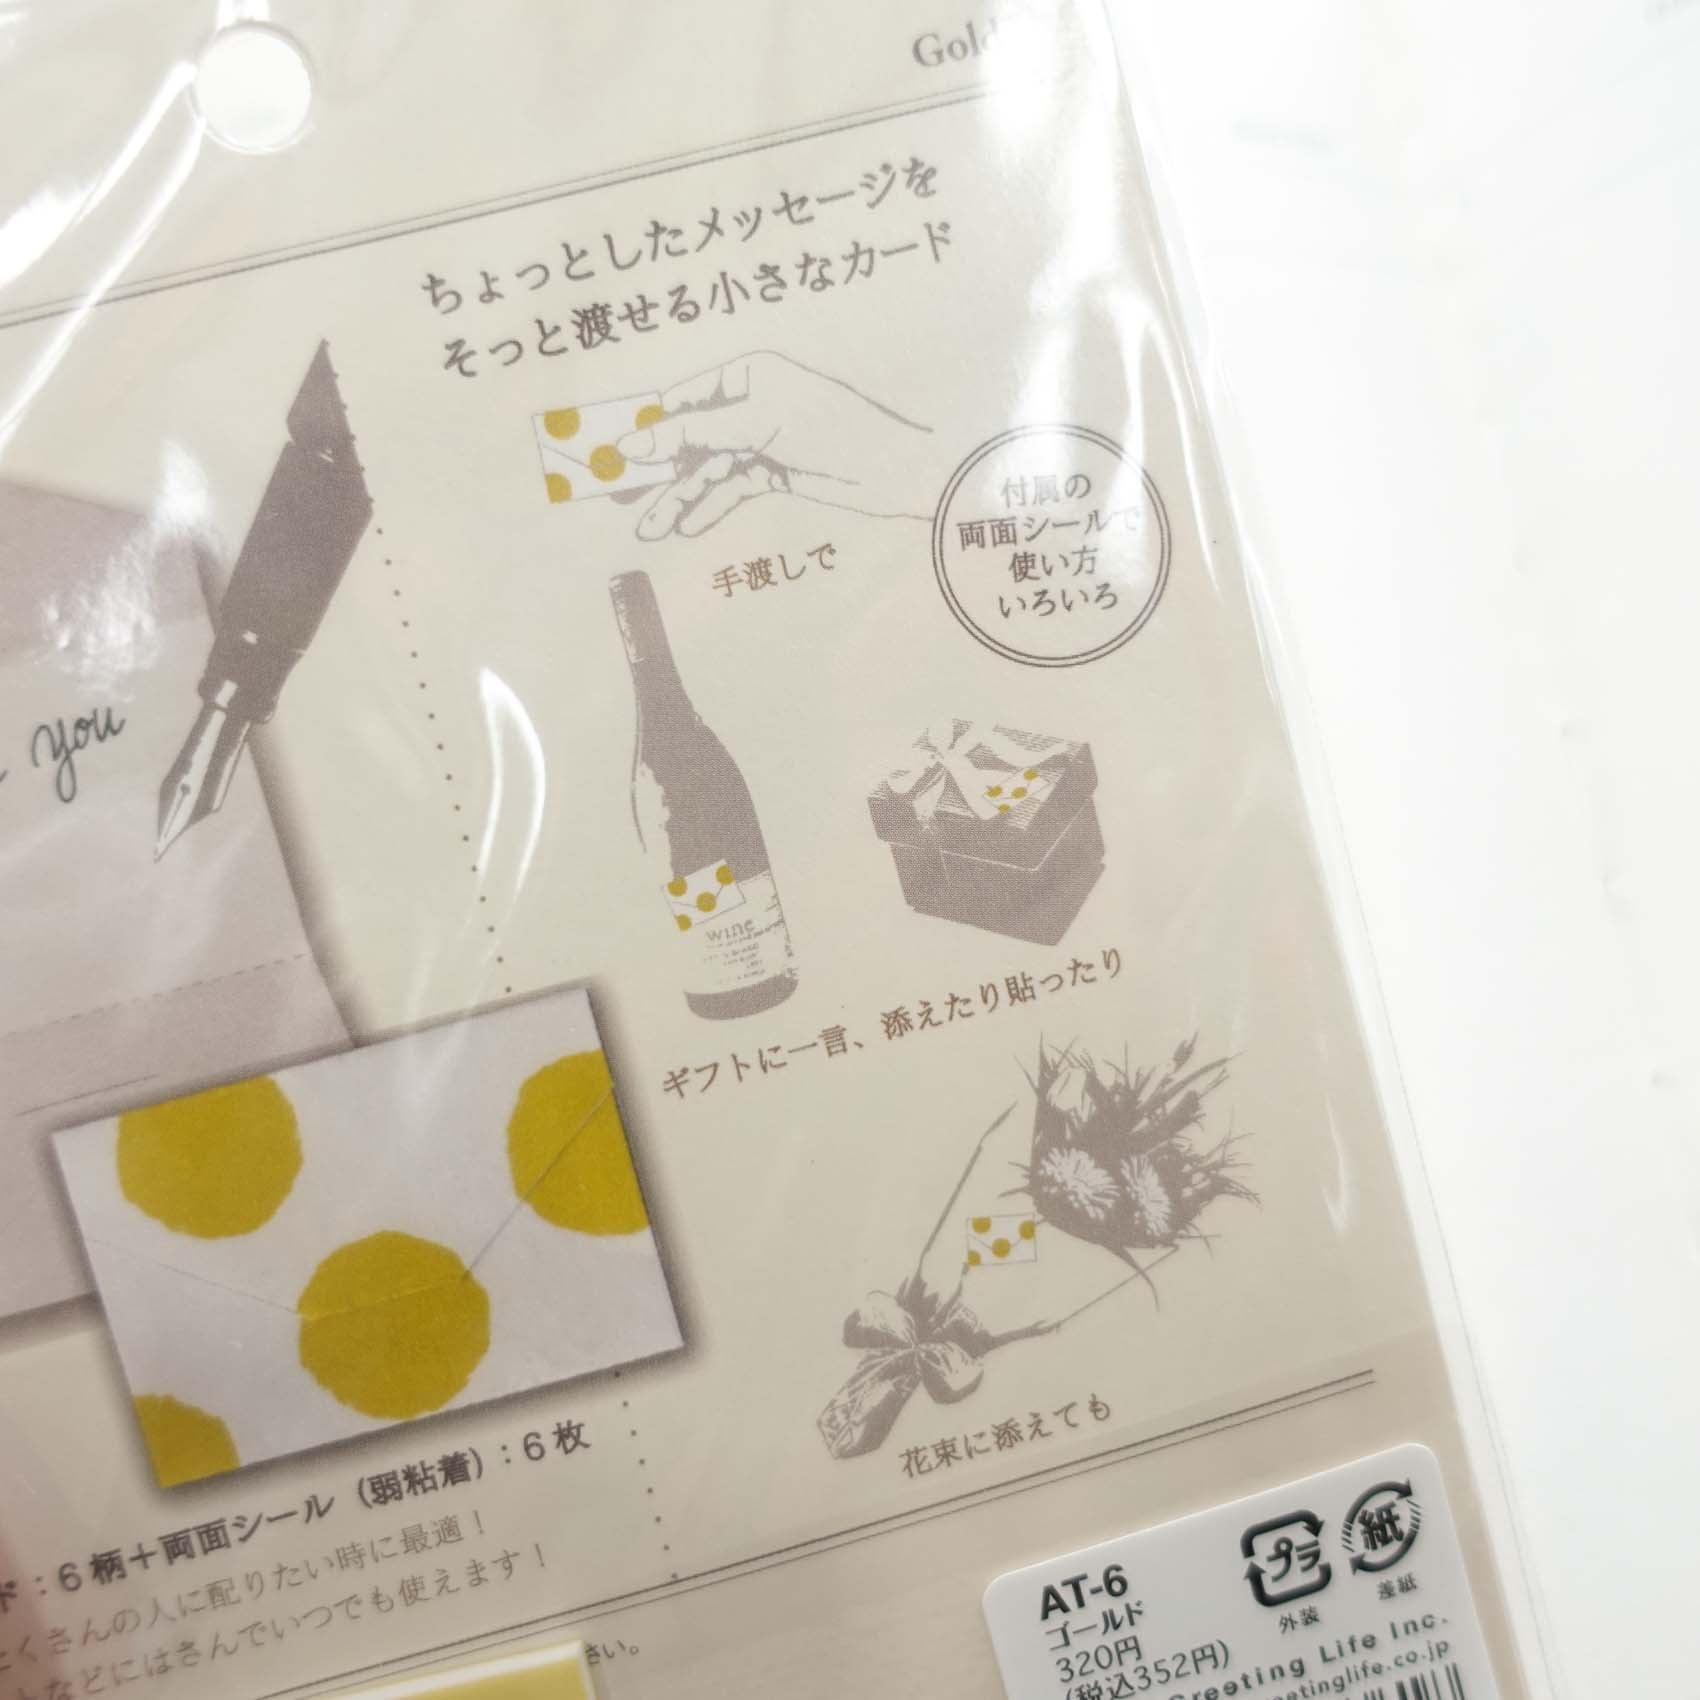 Mini Tiny Envelope 6pc Set - Gold Foil Patterns